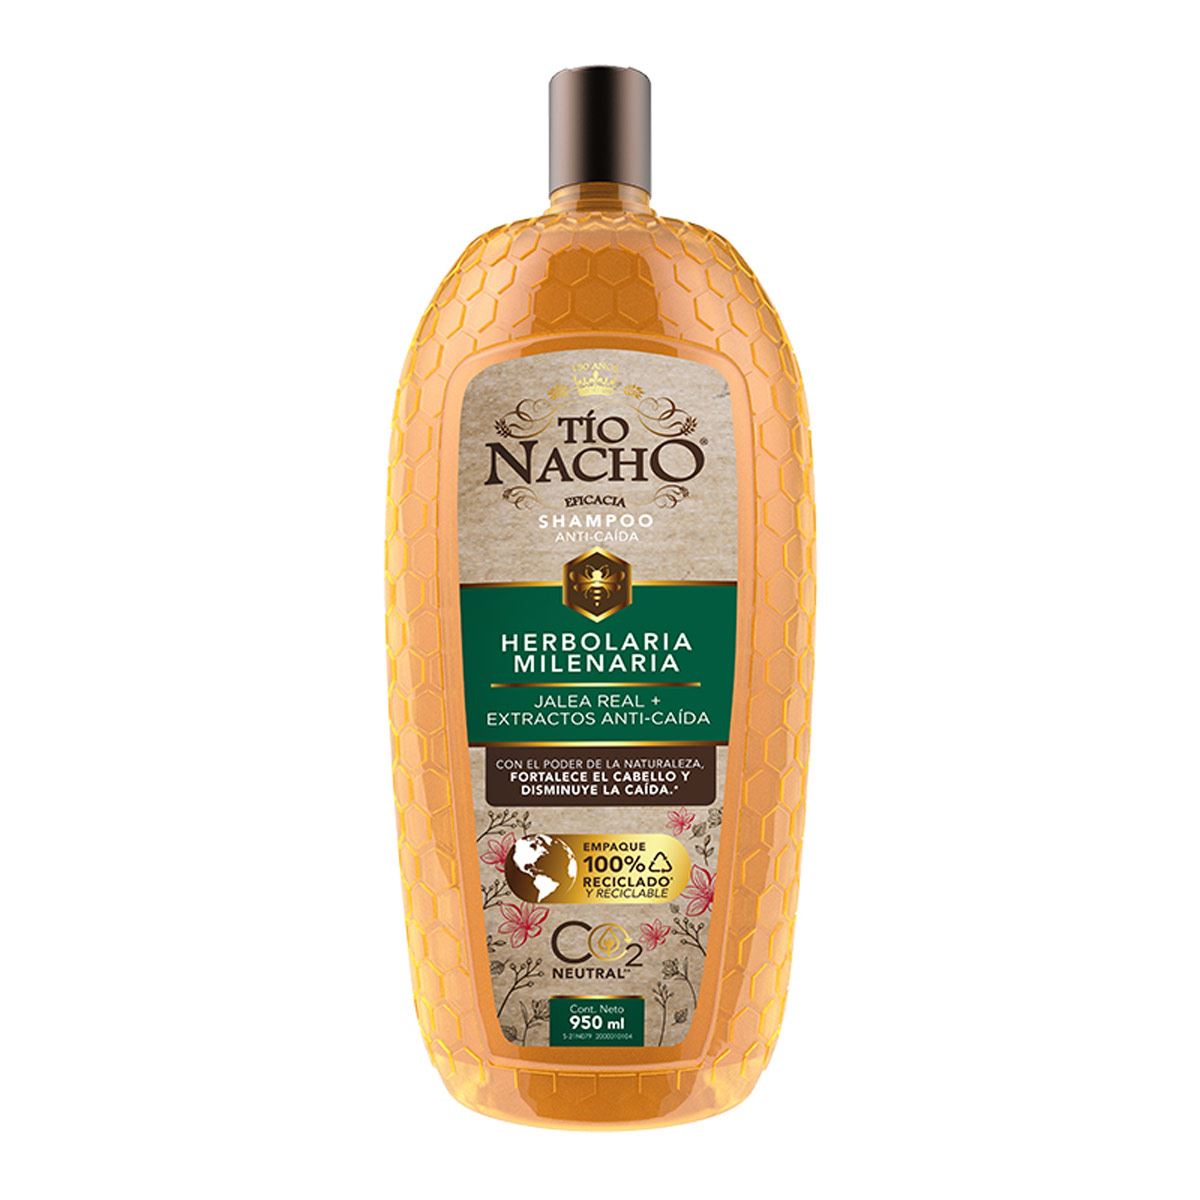 Shampoo Tío Nacho anti-caída herbolaria mexicana 415 ml